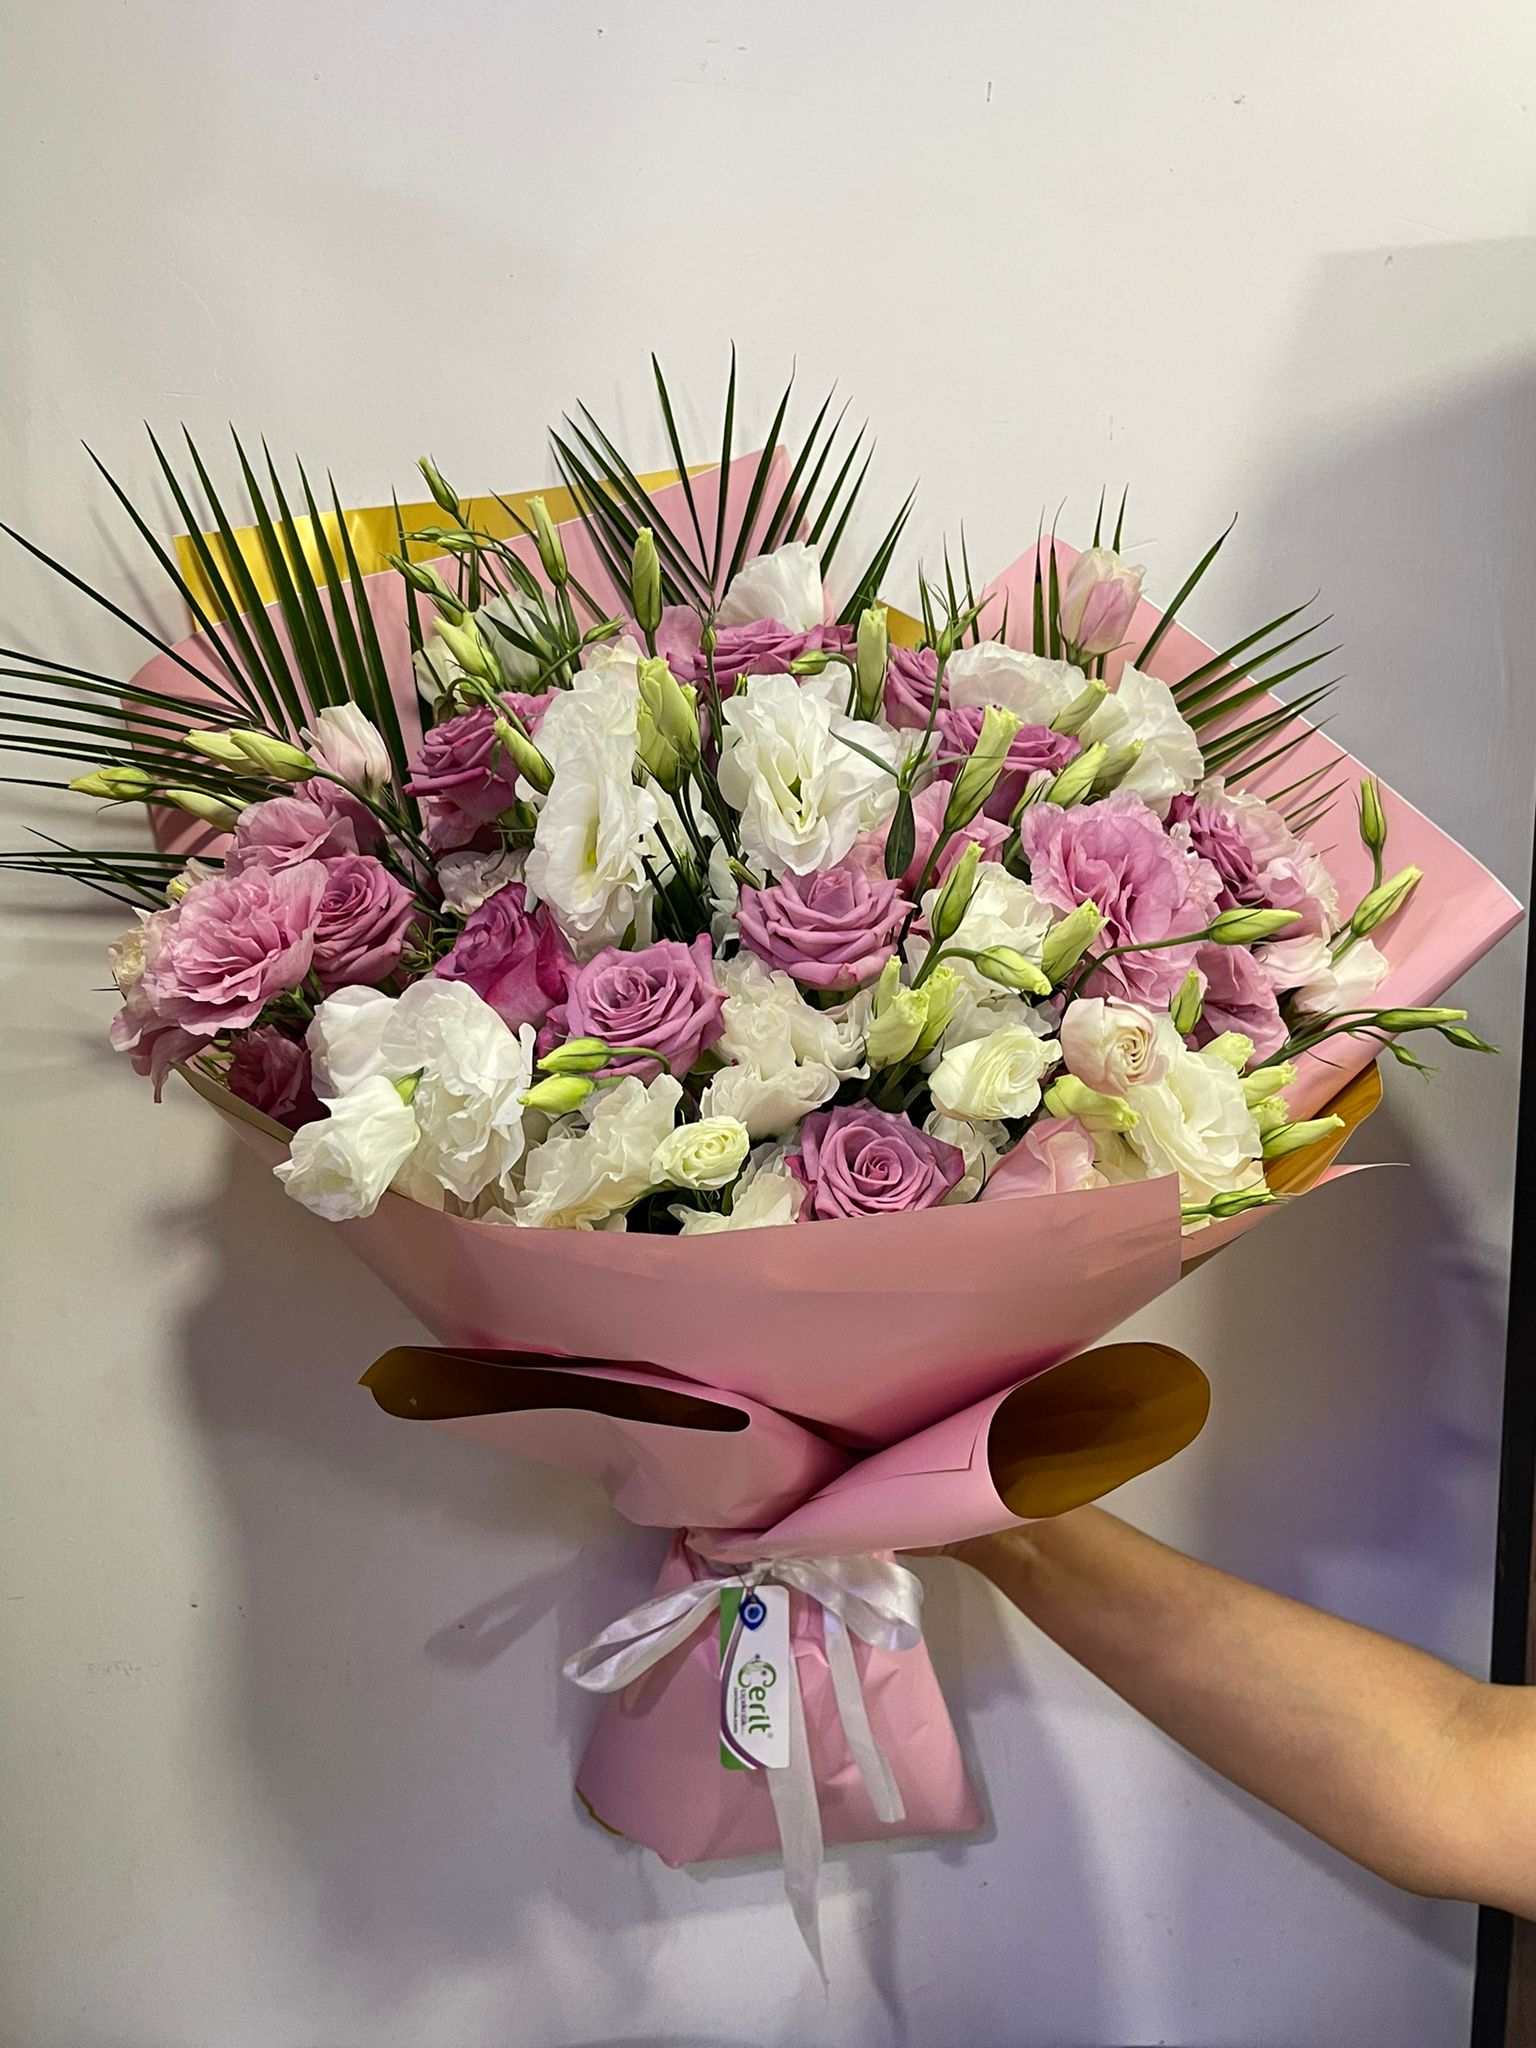  Belek Blumenlieferung Lisyantus Pink White & Rose Elegant Bouquet